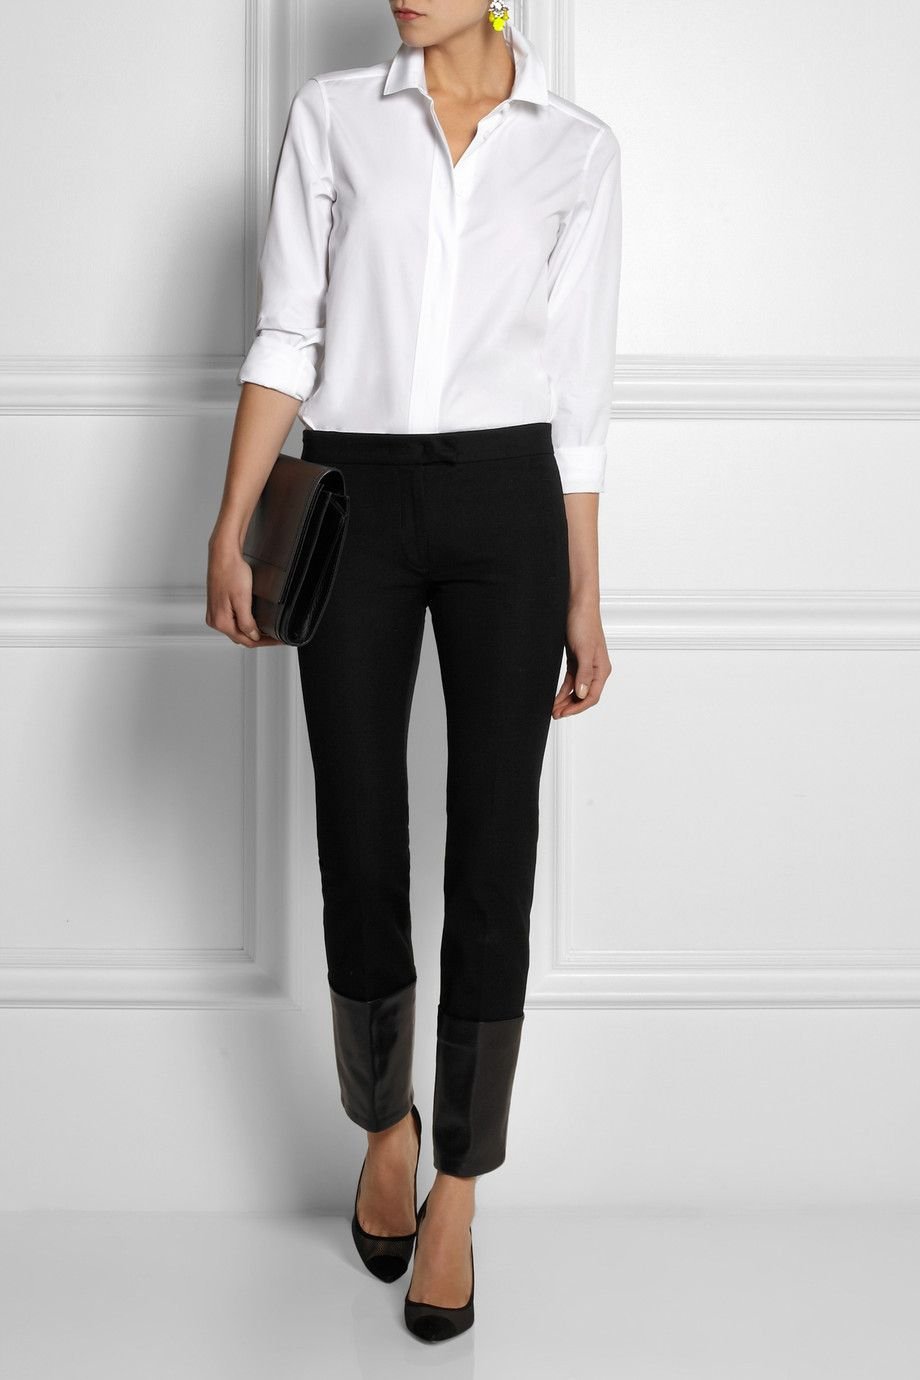 Черные брюки и блузка. Блузка с черными брюками. Белая рубашка и брюки женские. Белая рубашка и черные брюки женские. Белая блузкачерныые брюки.